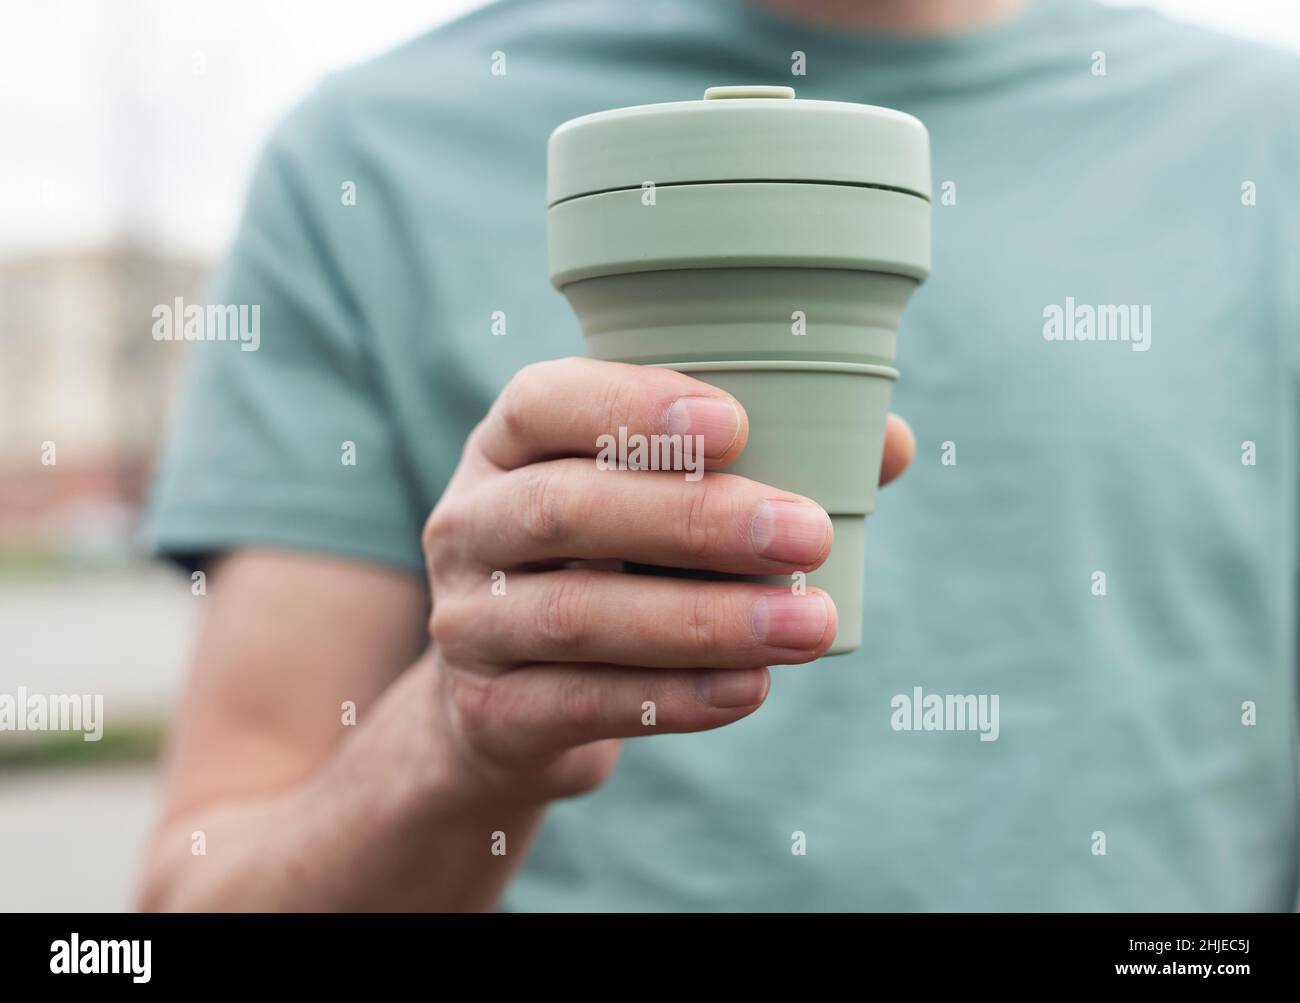 Wiederverwendbarer Eco-Becher zum Mitnehmen von Kaffee oder Tee. Männliche Hand mit nachhaltigem Silikonbecher. Umweltfreundliche Person leben. Stockfoto